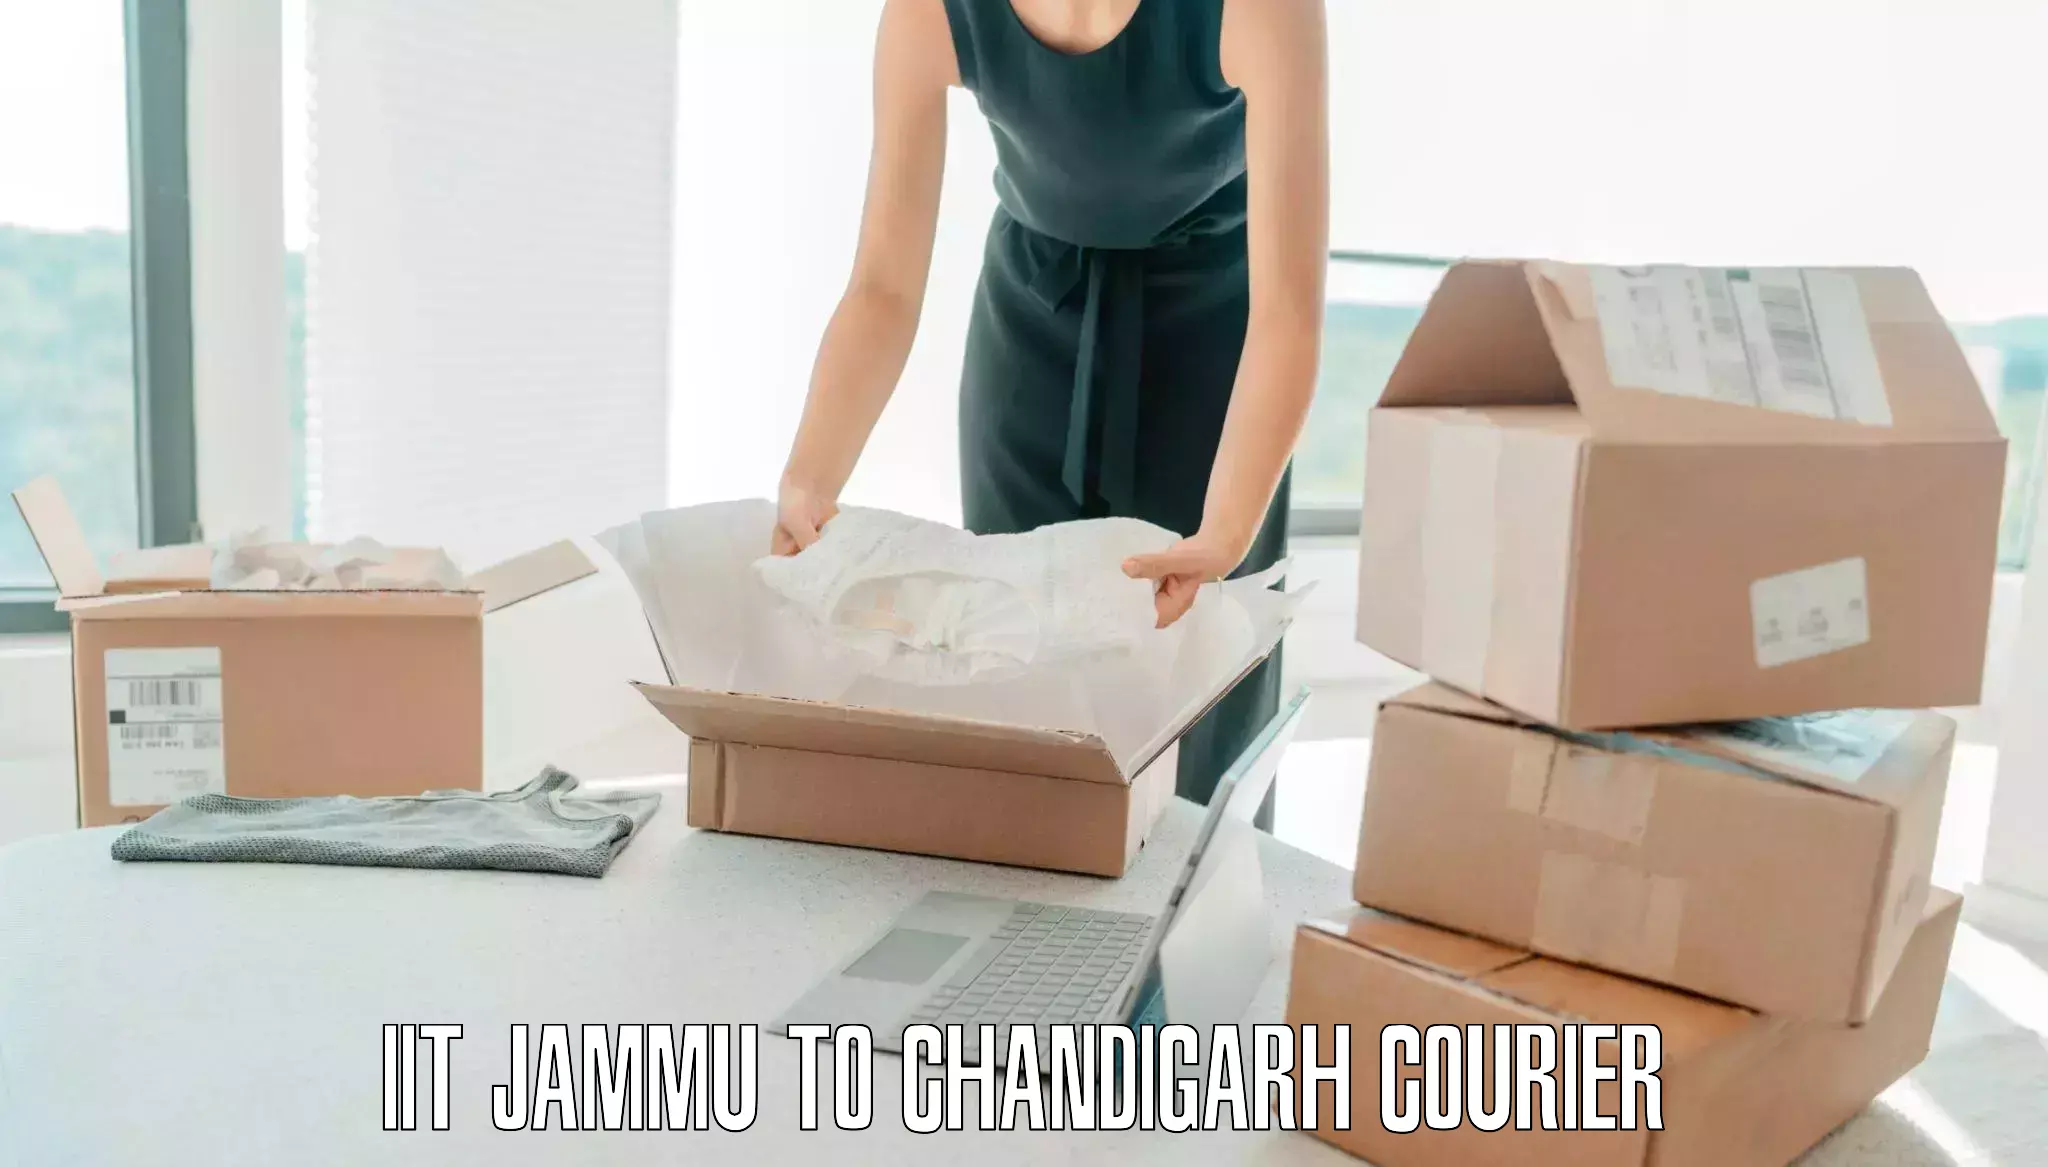 Scheduled baggage courier IIT Jammu to Chandigarh